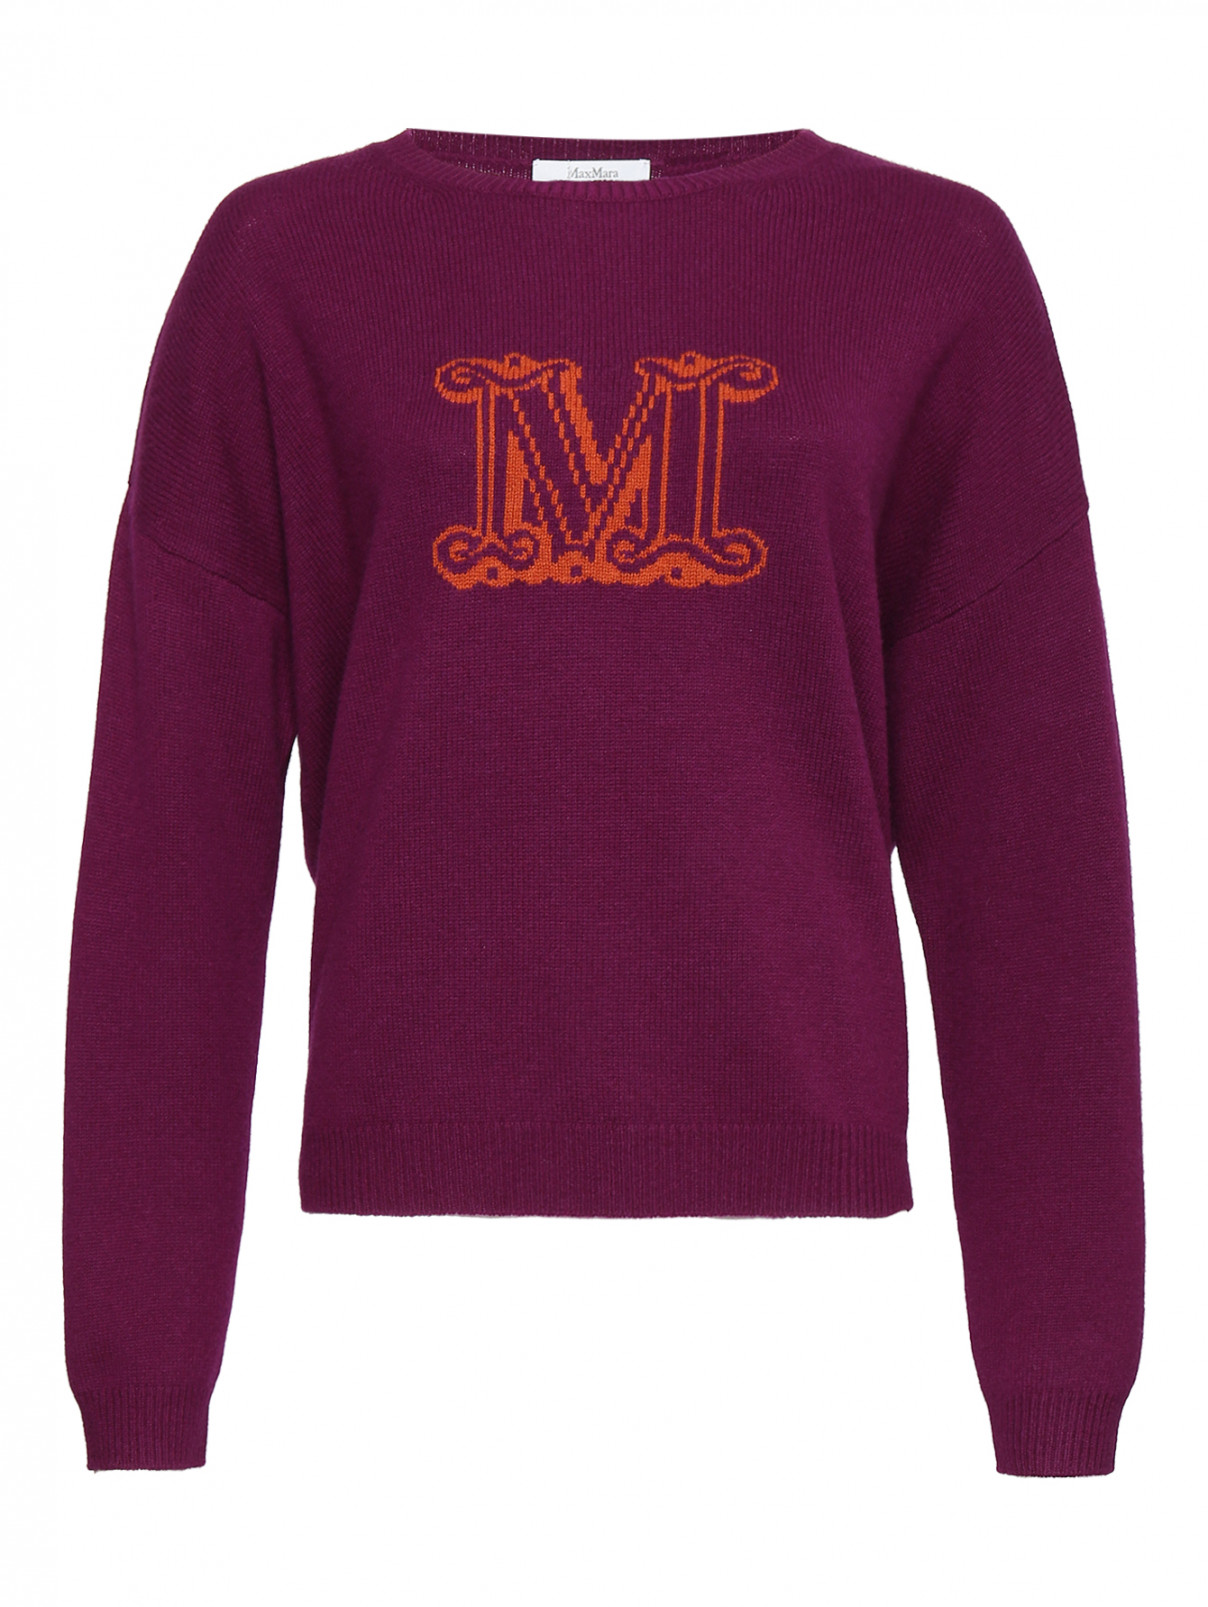 Джемпер из кашемира с логотипом Max Mara  –  Общий вид  – Цвет:  Фиолетовый